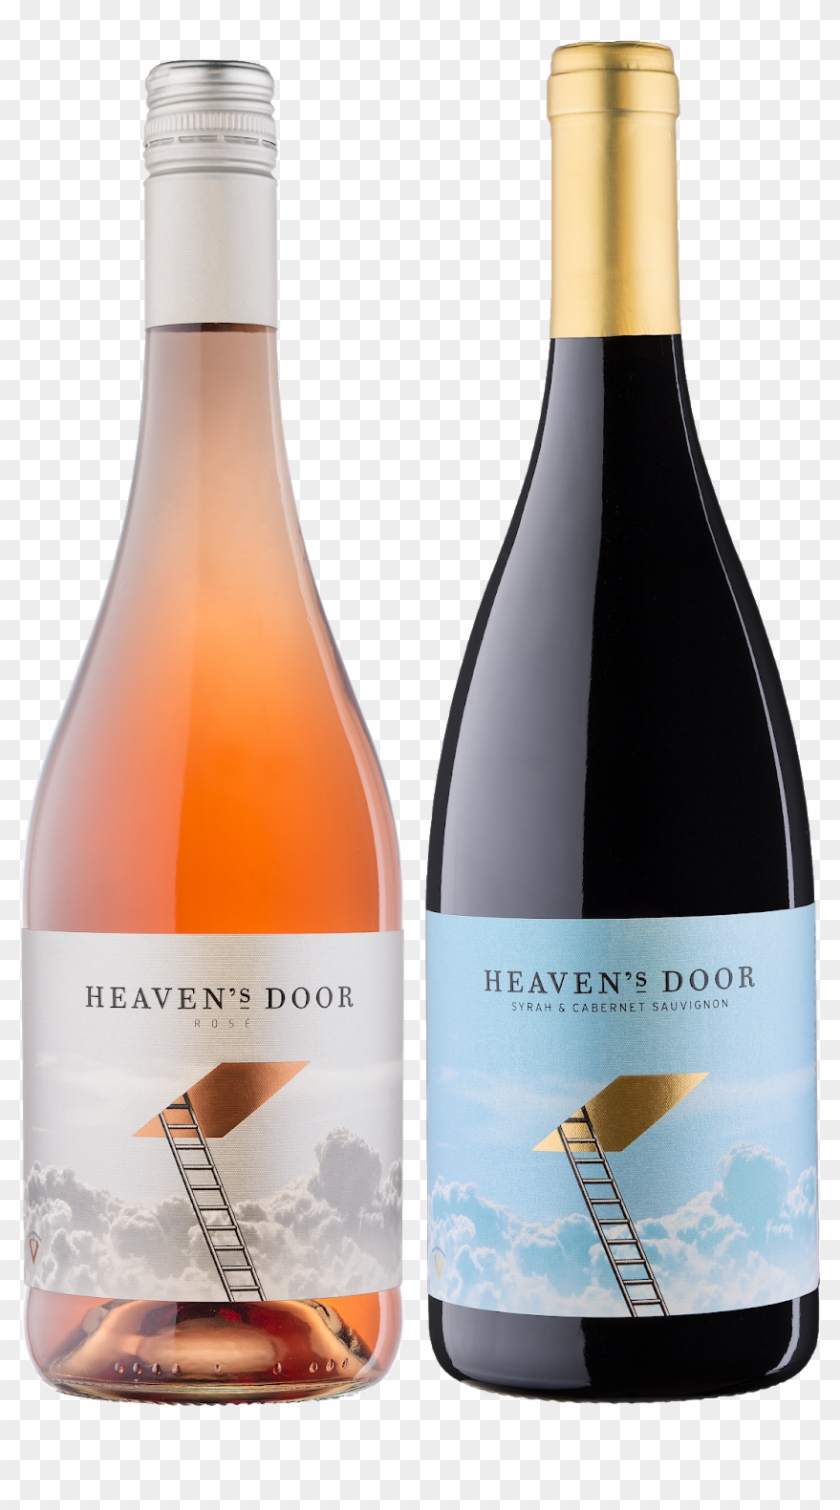 Heaven's Door Wines On Packaging Of The World - Heavens Door Wine Clipart